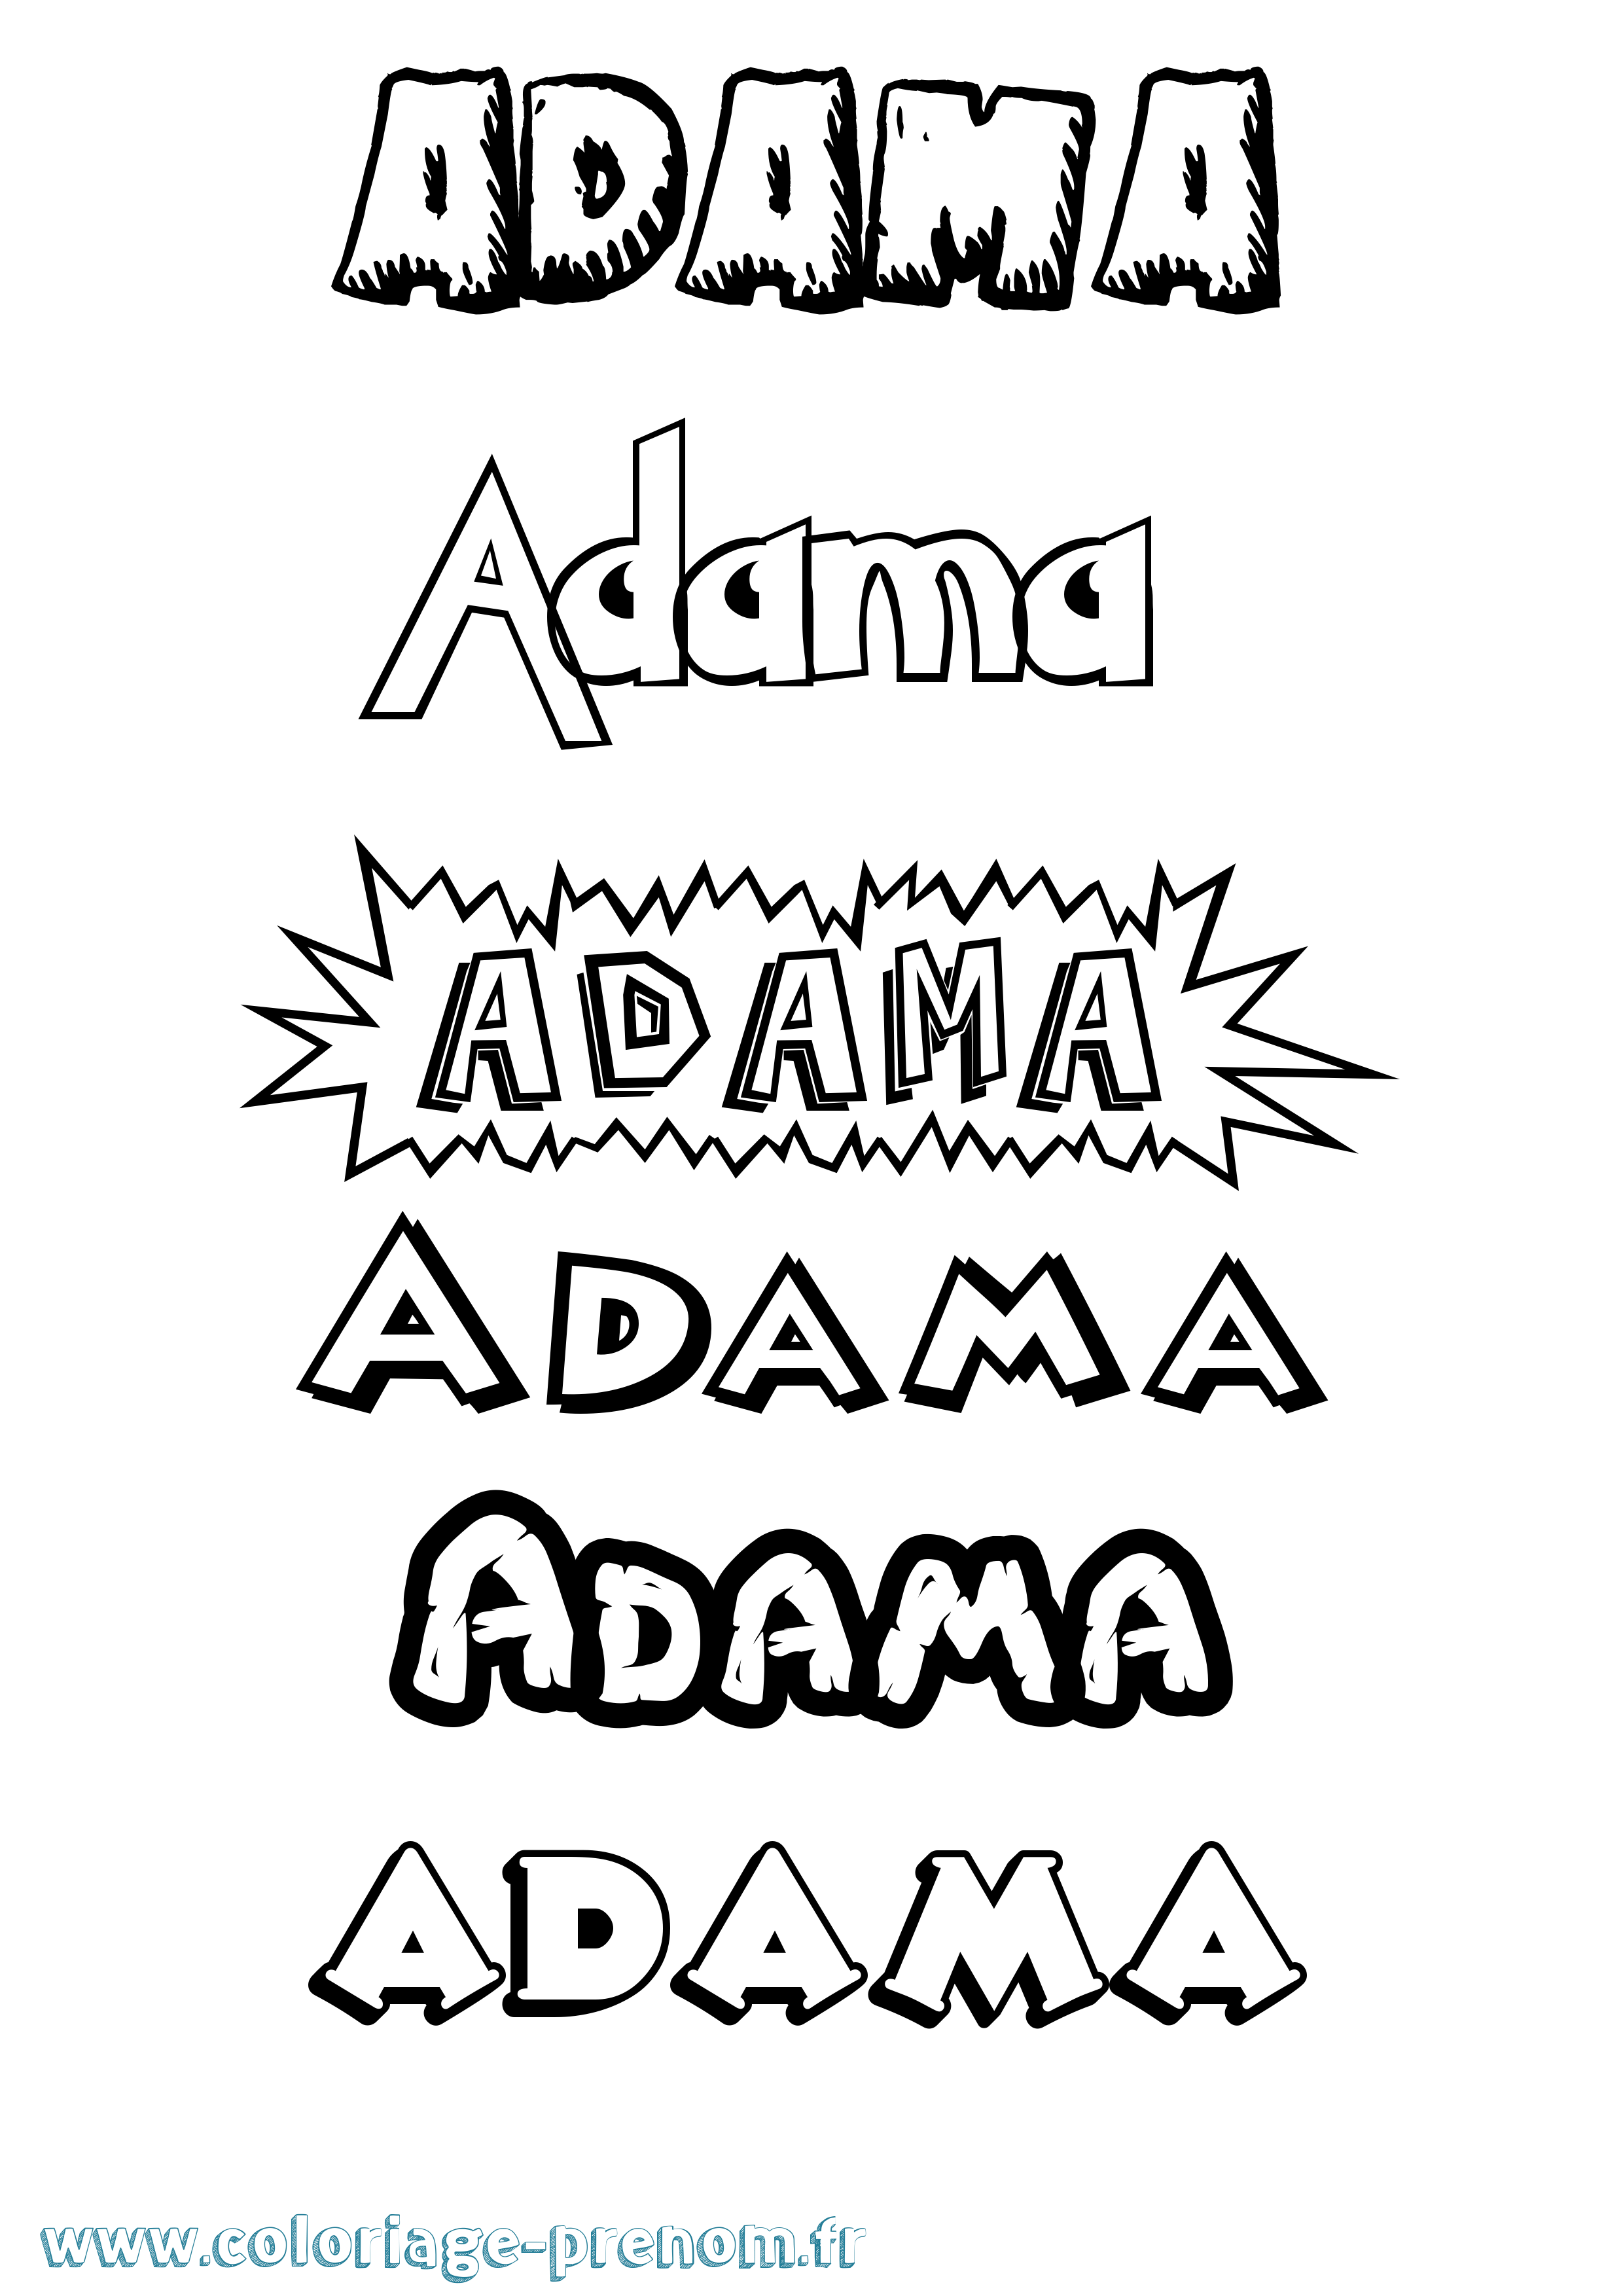 Coloriage prénom Adama